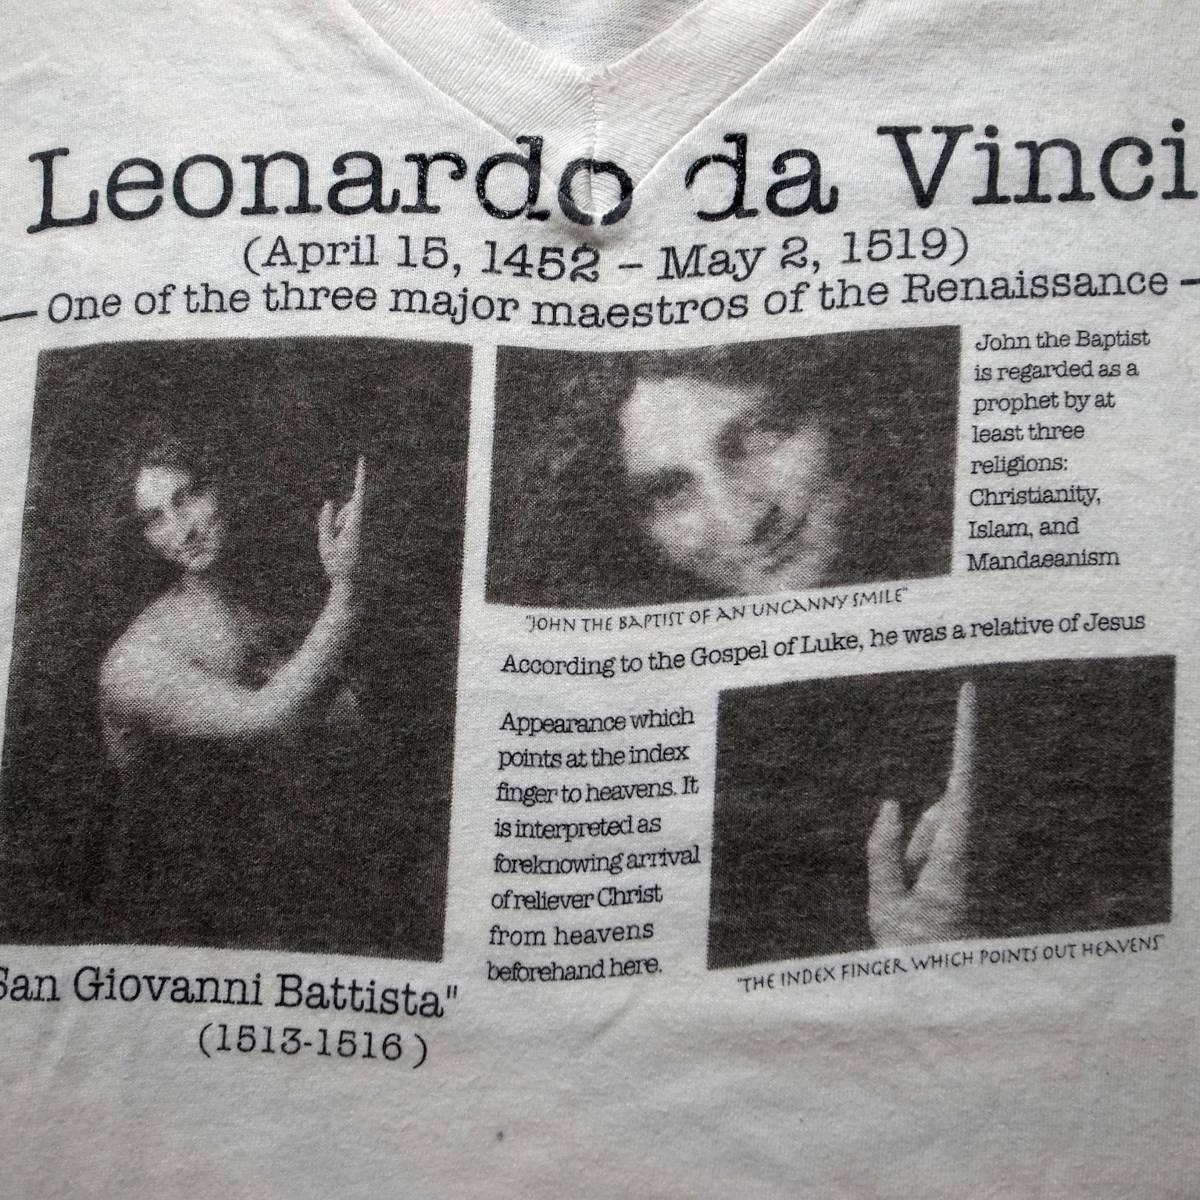 Super Rare années 90 Leonardo da Vinci Jean-Baptiste Rare T-shirt Blanc M vintage Vieux Vêtements Peinture Christ Leonardo da Vinci Tee shirt blanc, musique, Souvenir, souvenirs, T-shirt